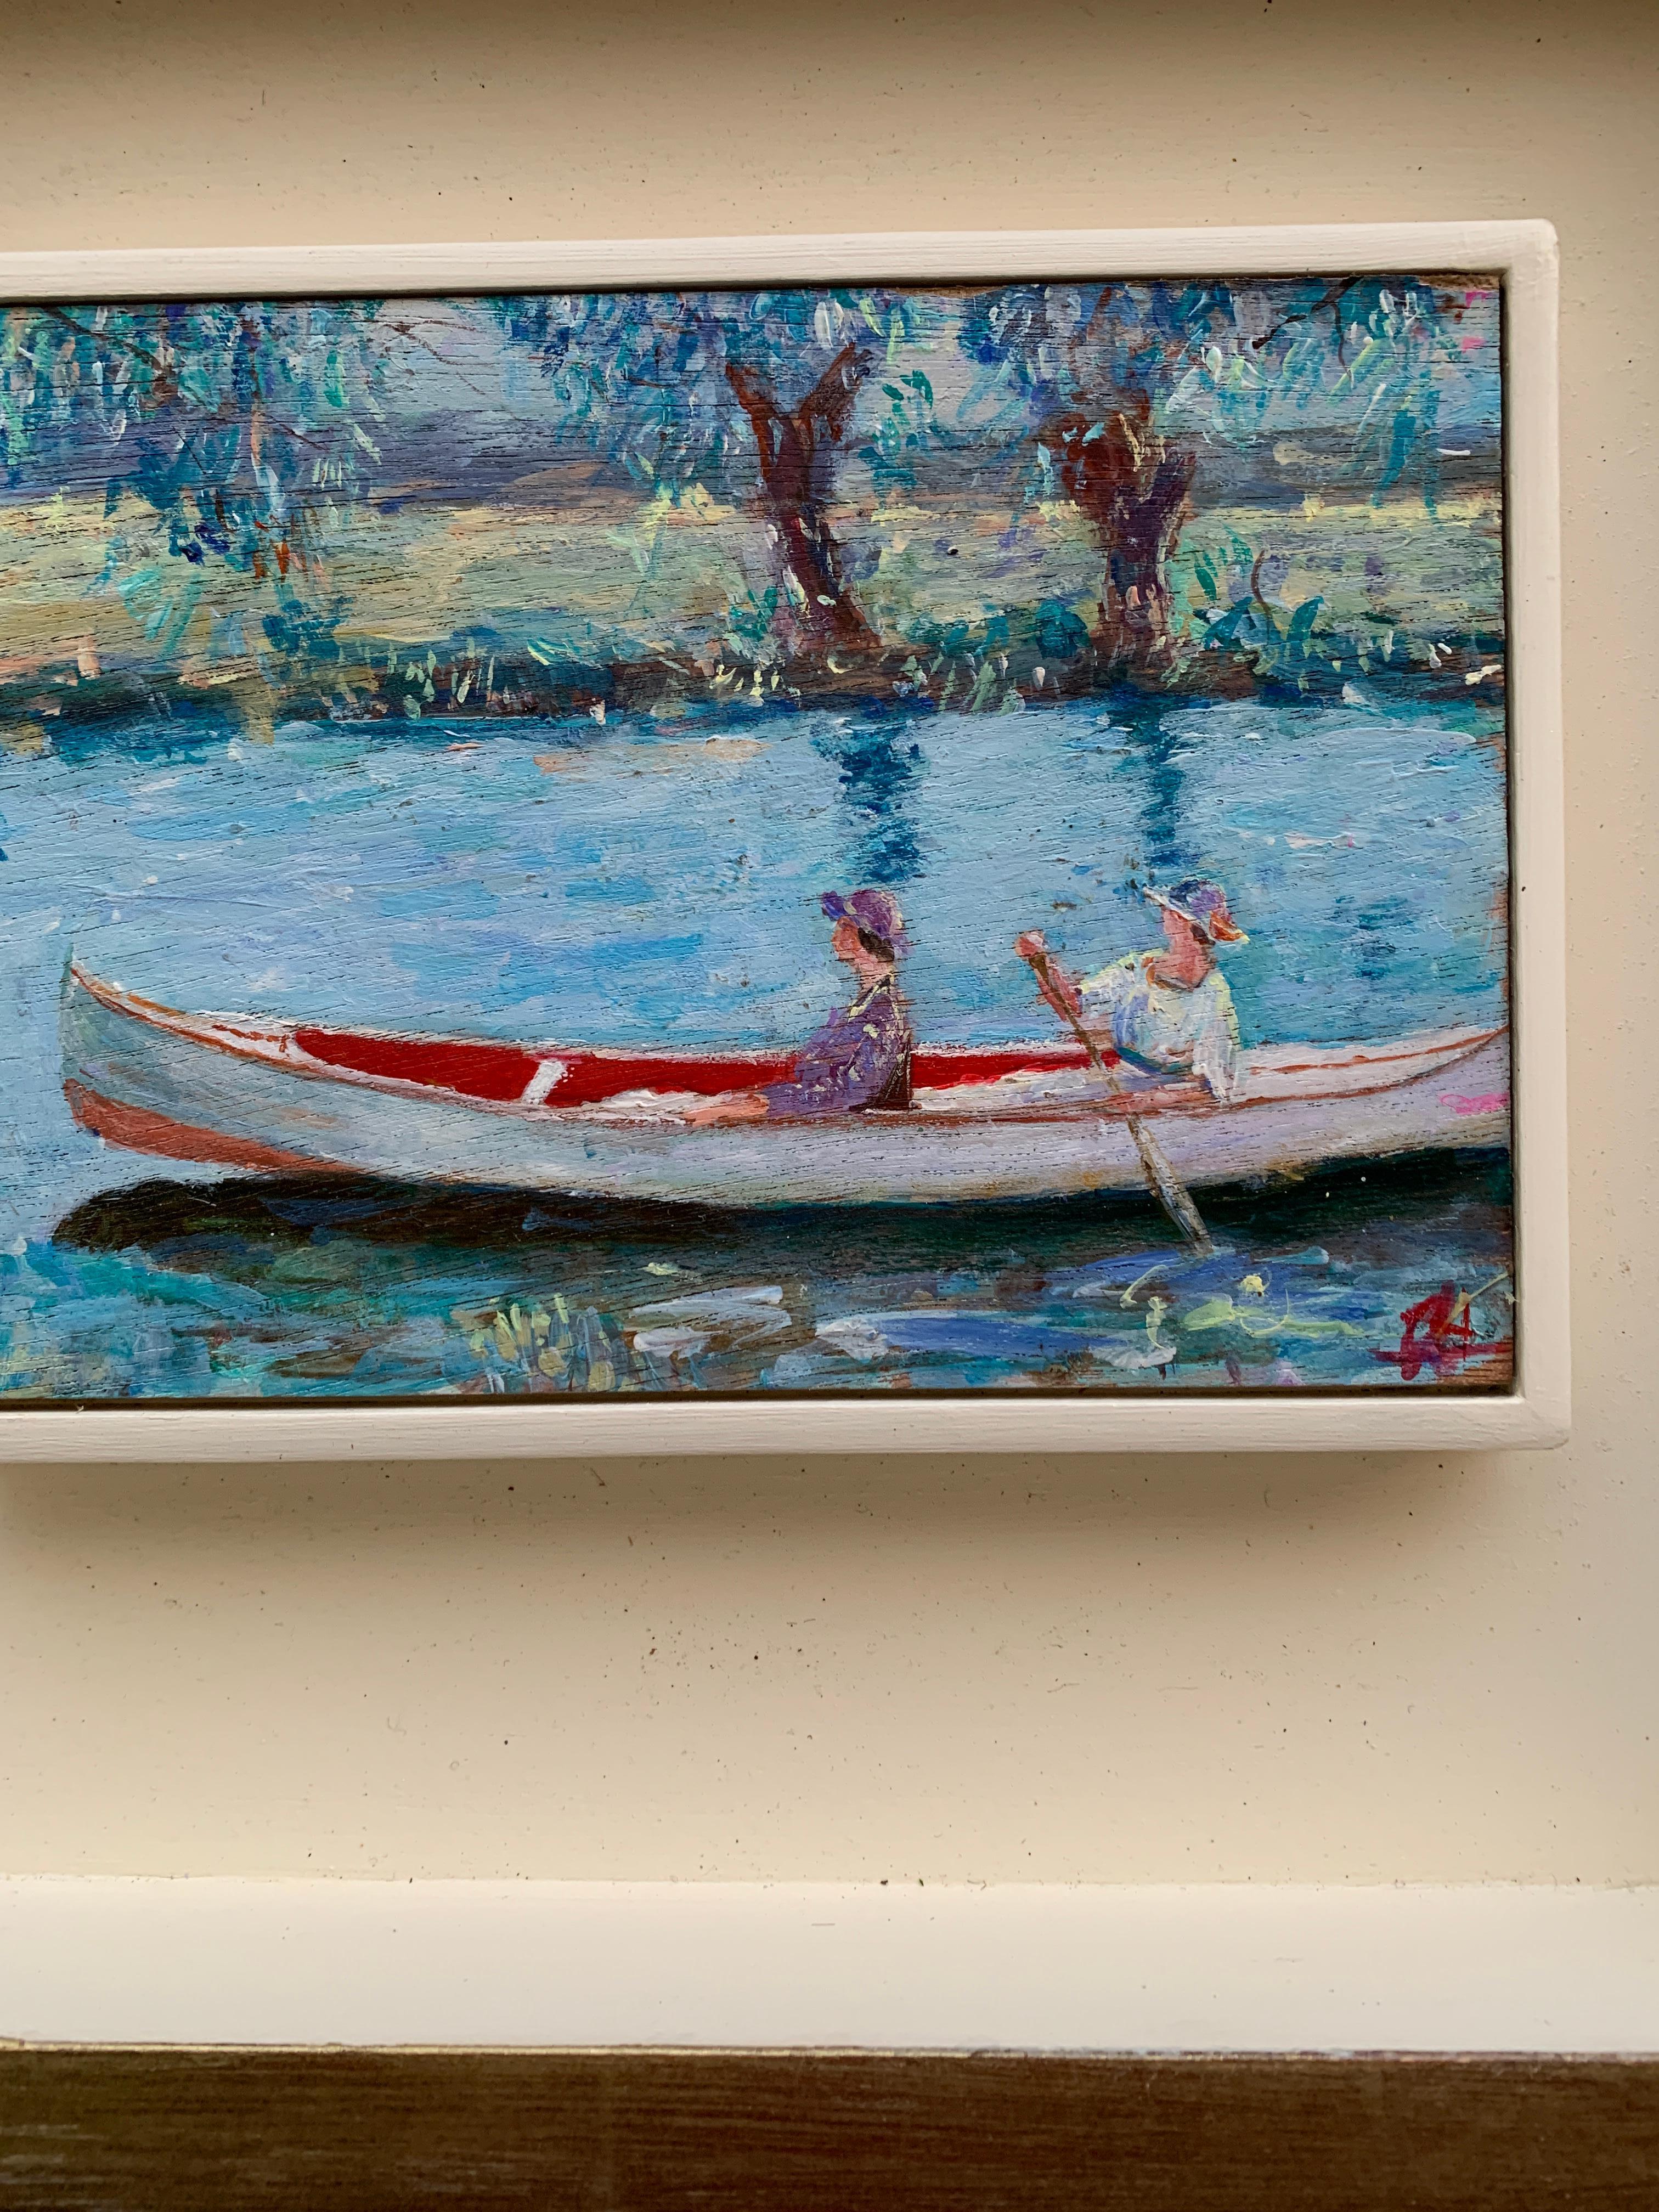 Scène impressionniste anglaise de deux femmes dans un canoë, sur un paysage fluvial  - Painting de Charles Bertie Hall